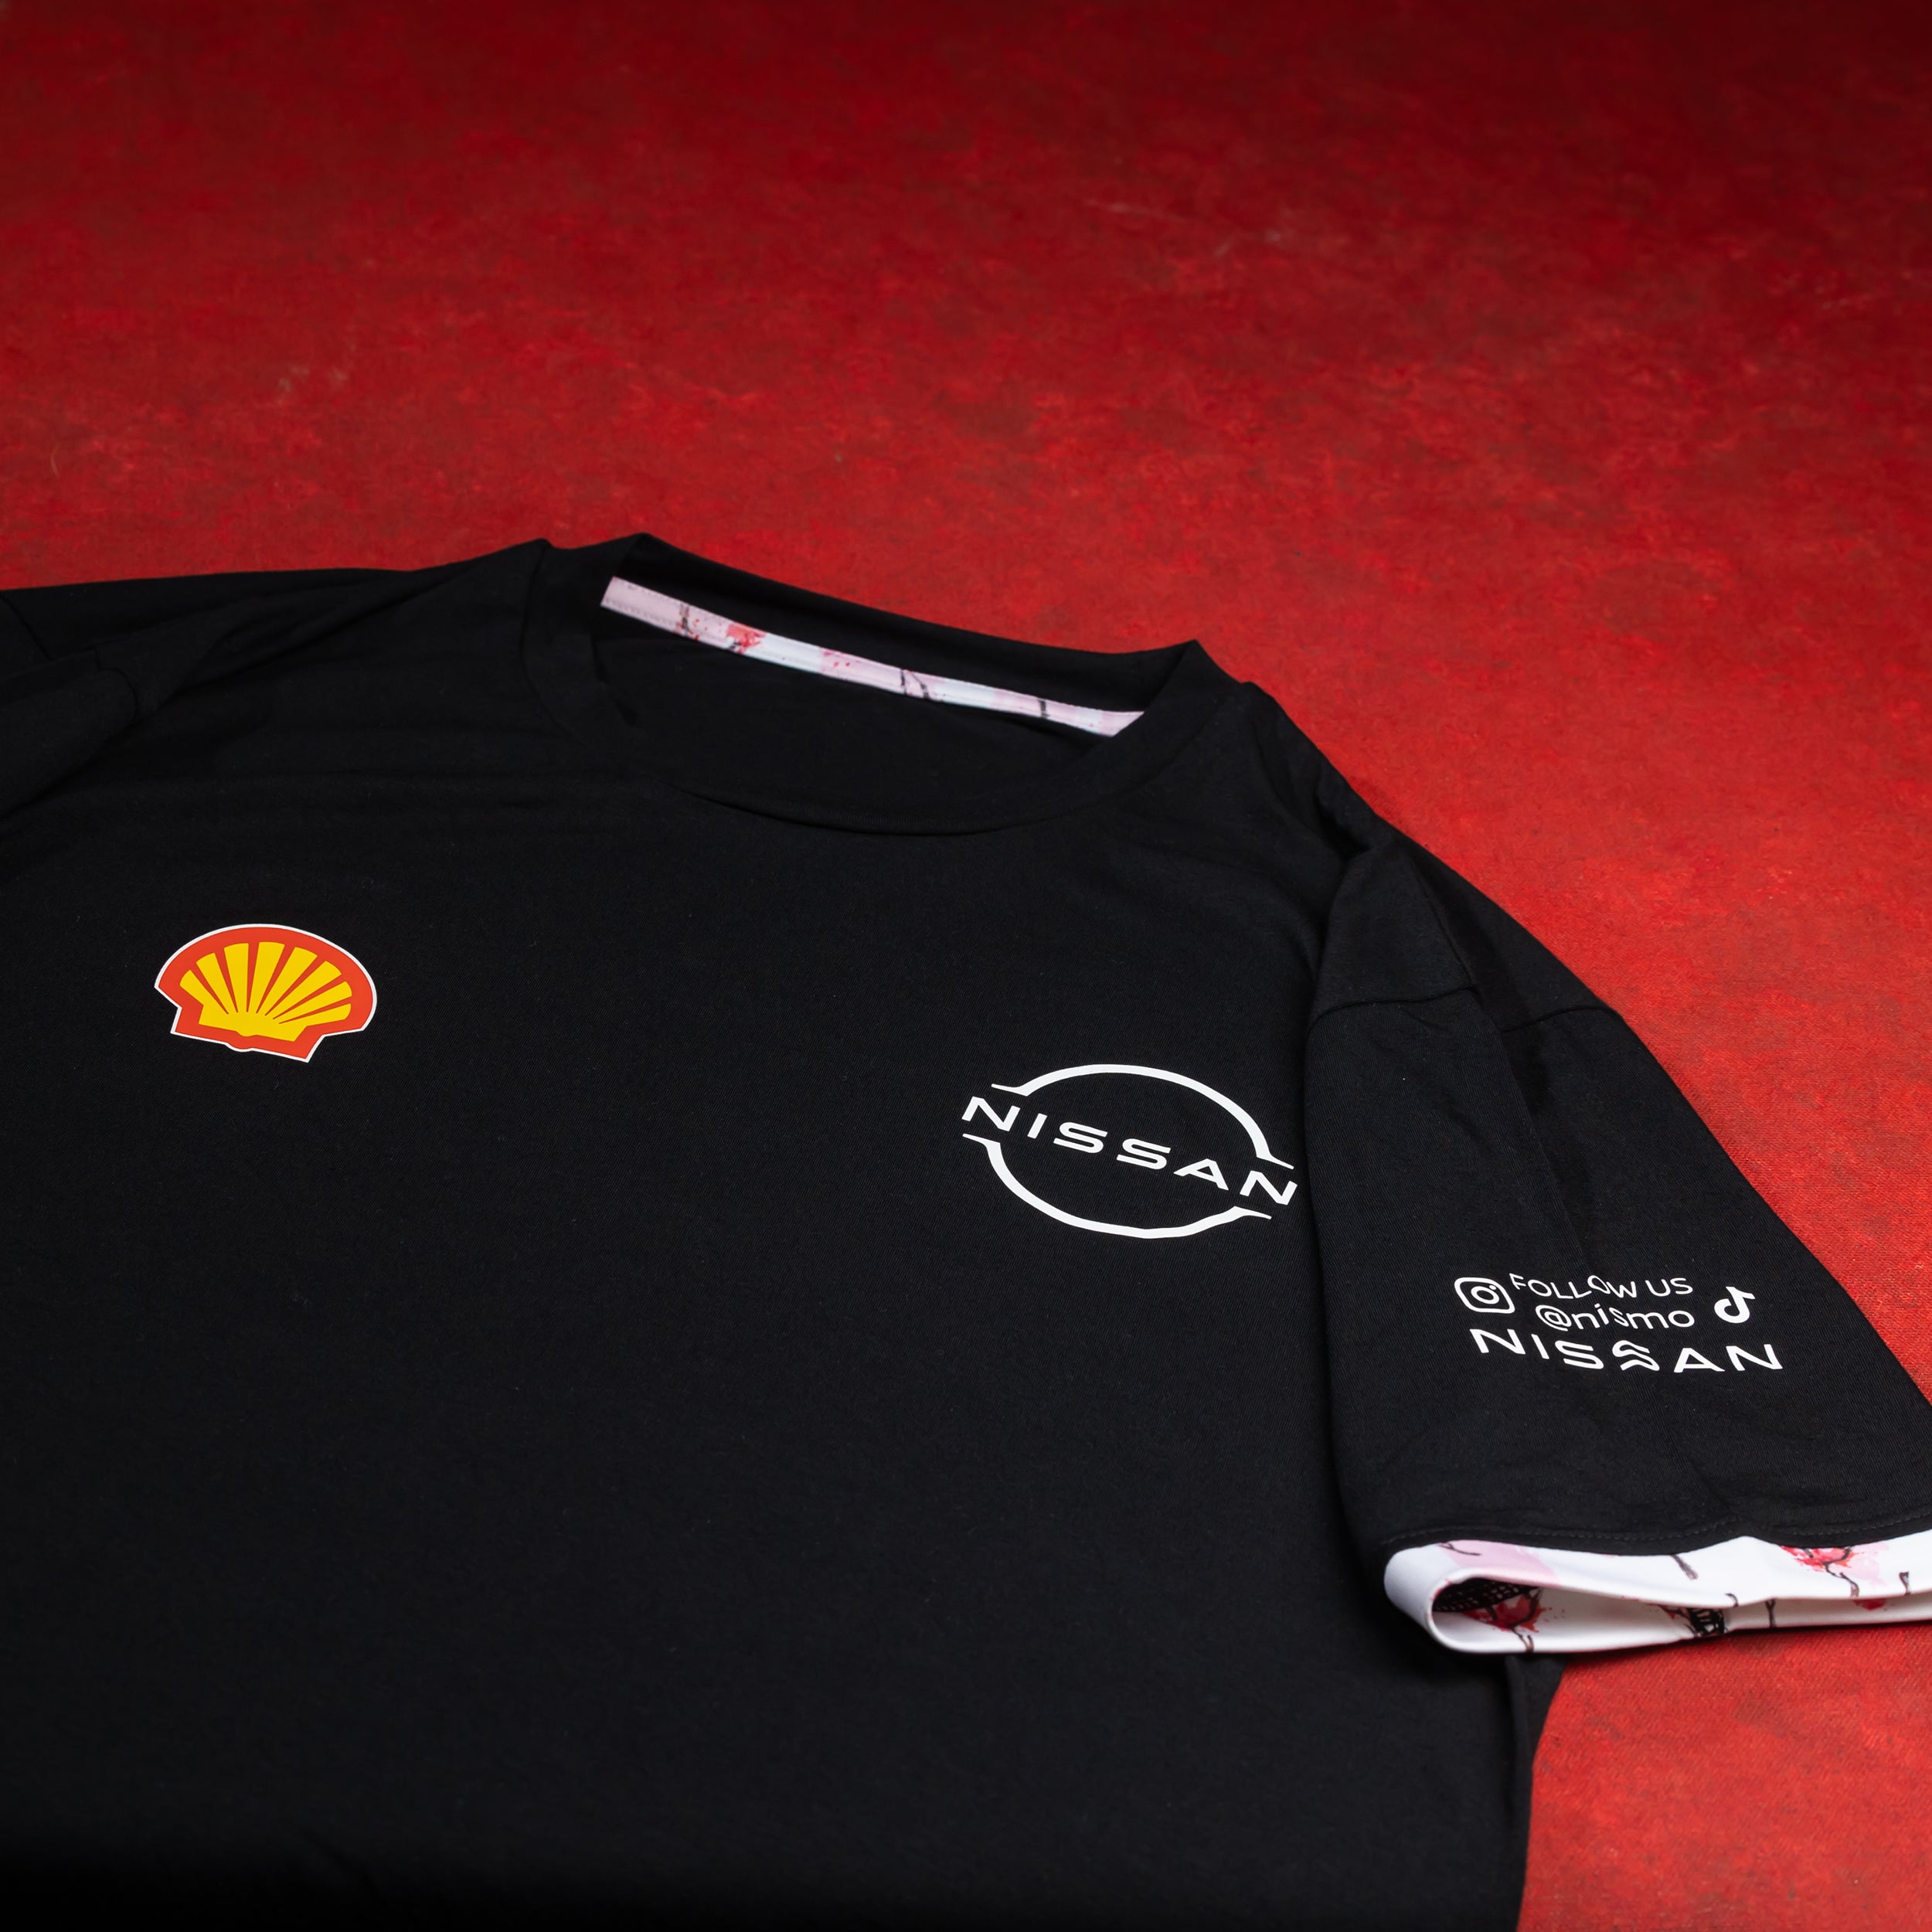 Nissan Formula E Team Replica T-shirt Unisex Black